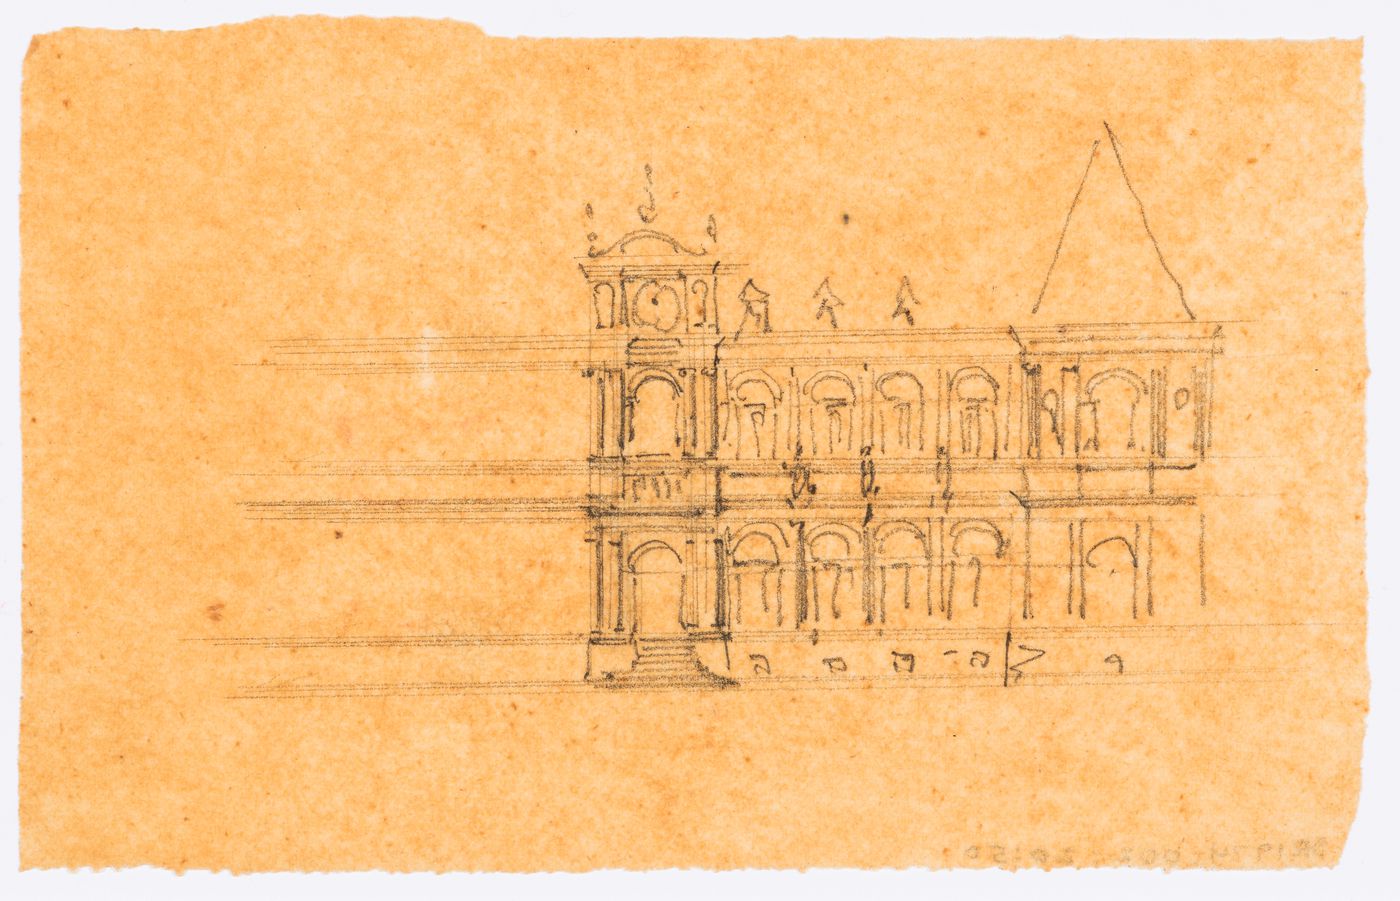 Project for a Hôtel de ville, Poitiers: Partial sketch plan for the principal façade